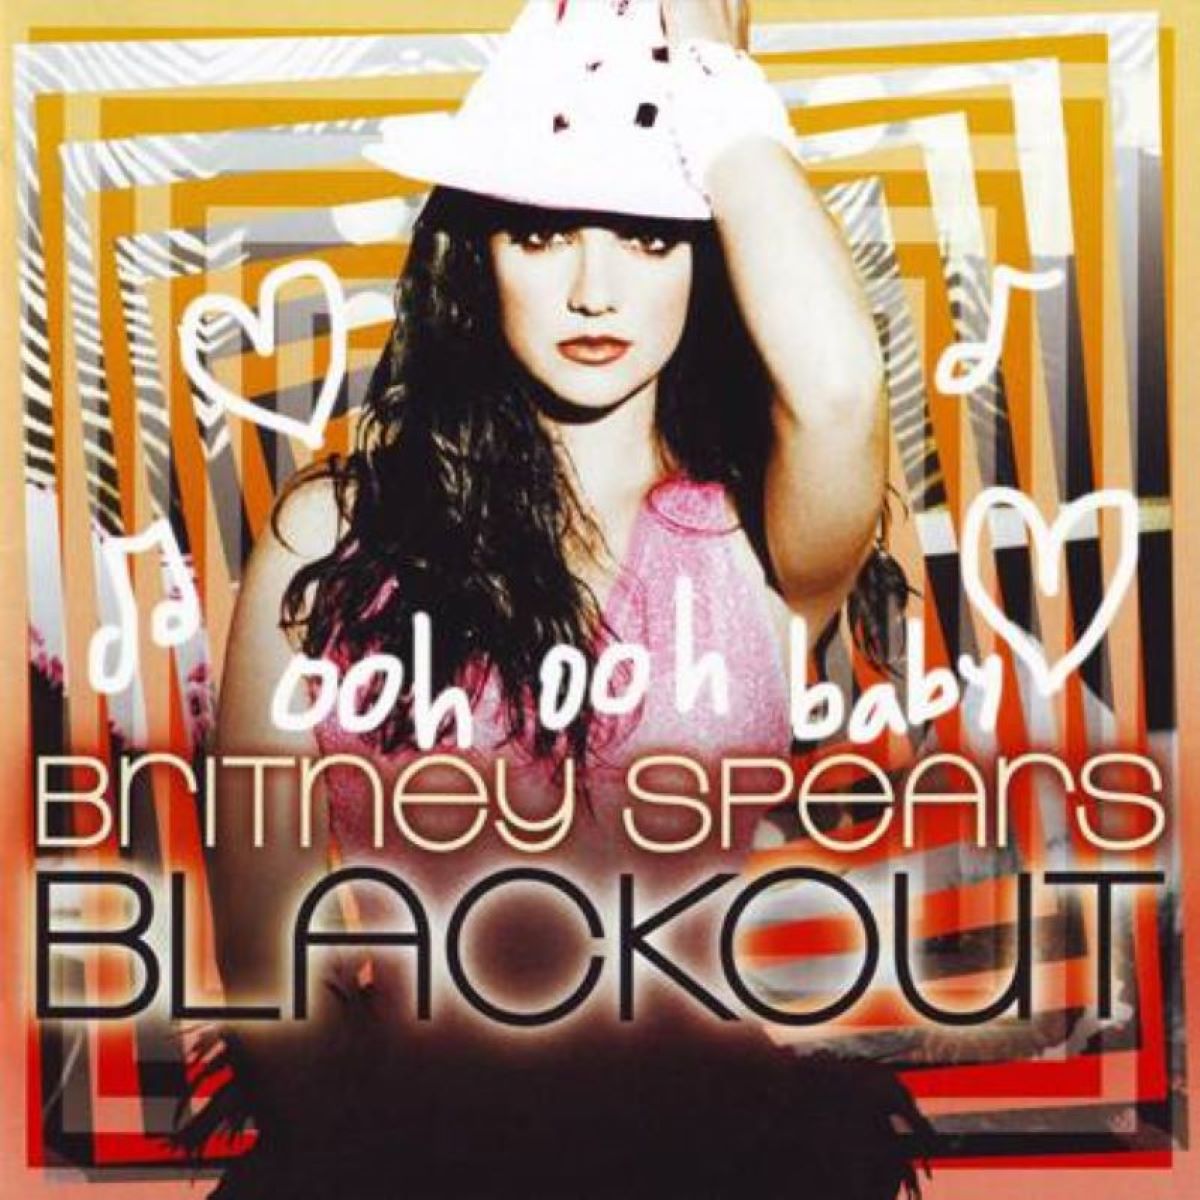 05. Blackout (2007) 